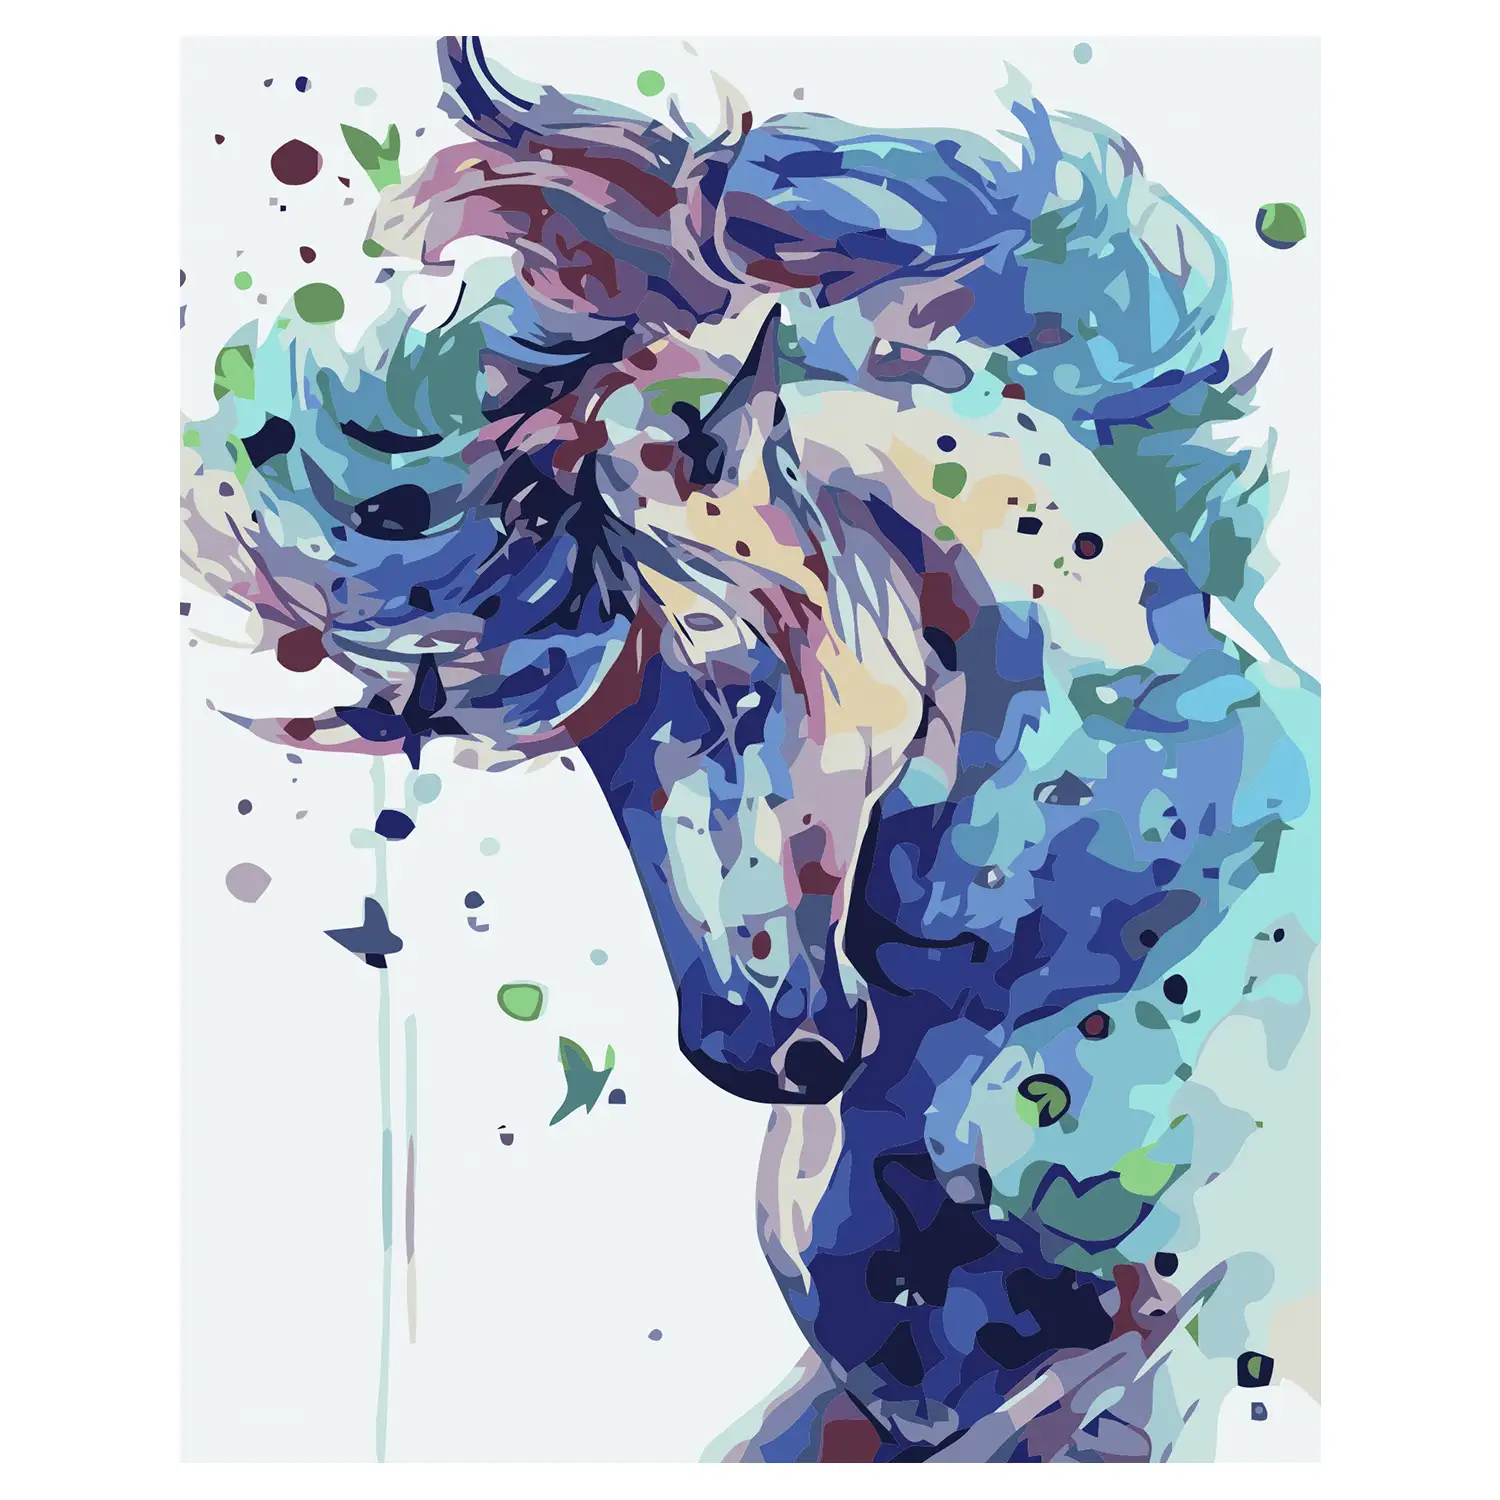 Lienzo con dibujo para pintar con números, de 40x50cm. Diseño caballo colorido. Incluye pinceles y pinturas necesarias.